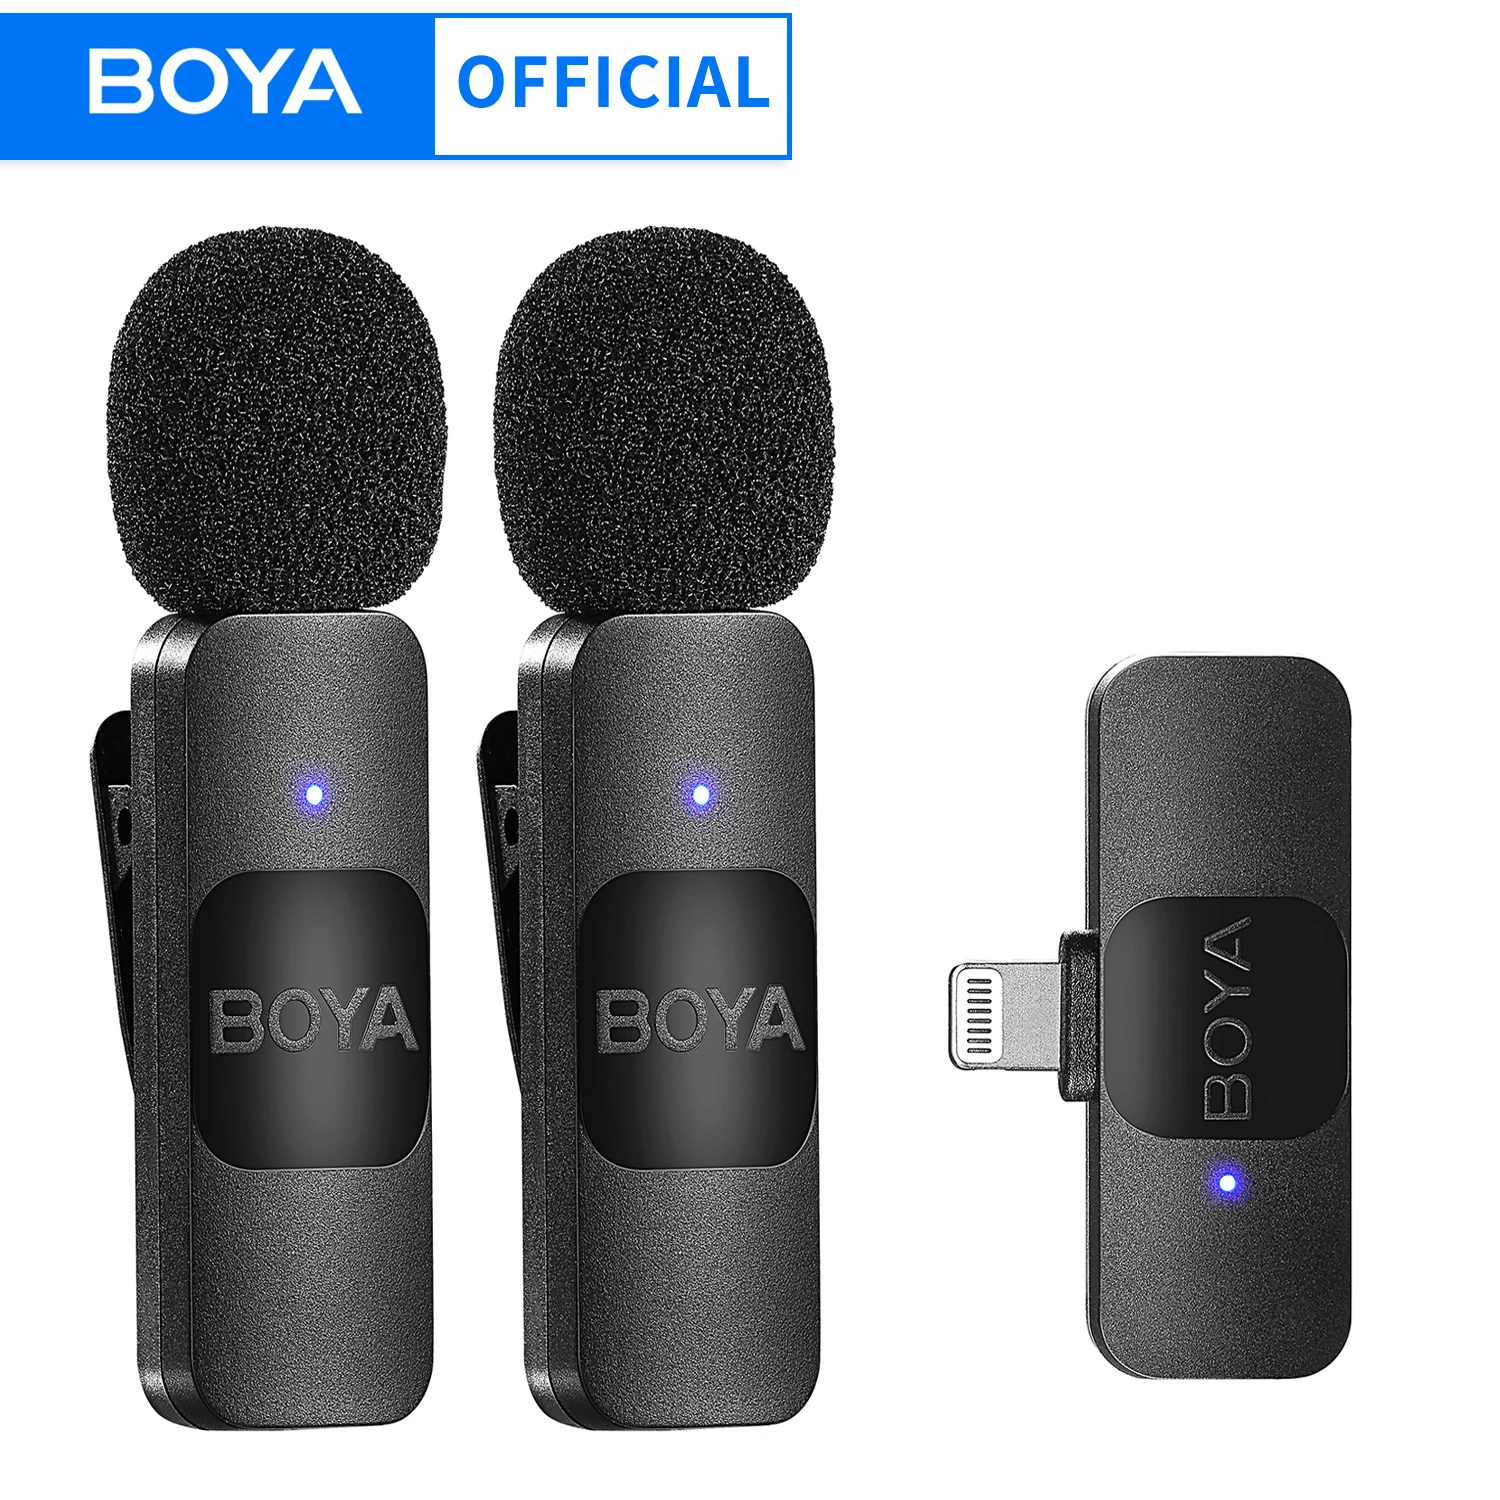 BOYA BY-V Mini microfono Lavalier Wireless professionale per iPhone iPad  Android trasmissione in diretta registrazione di gioco intervista Vlog -  AliExpress